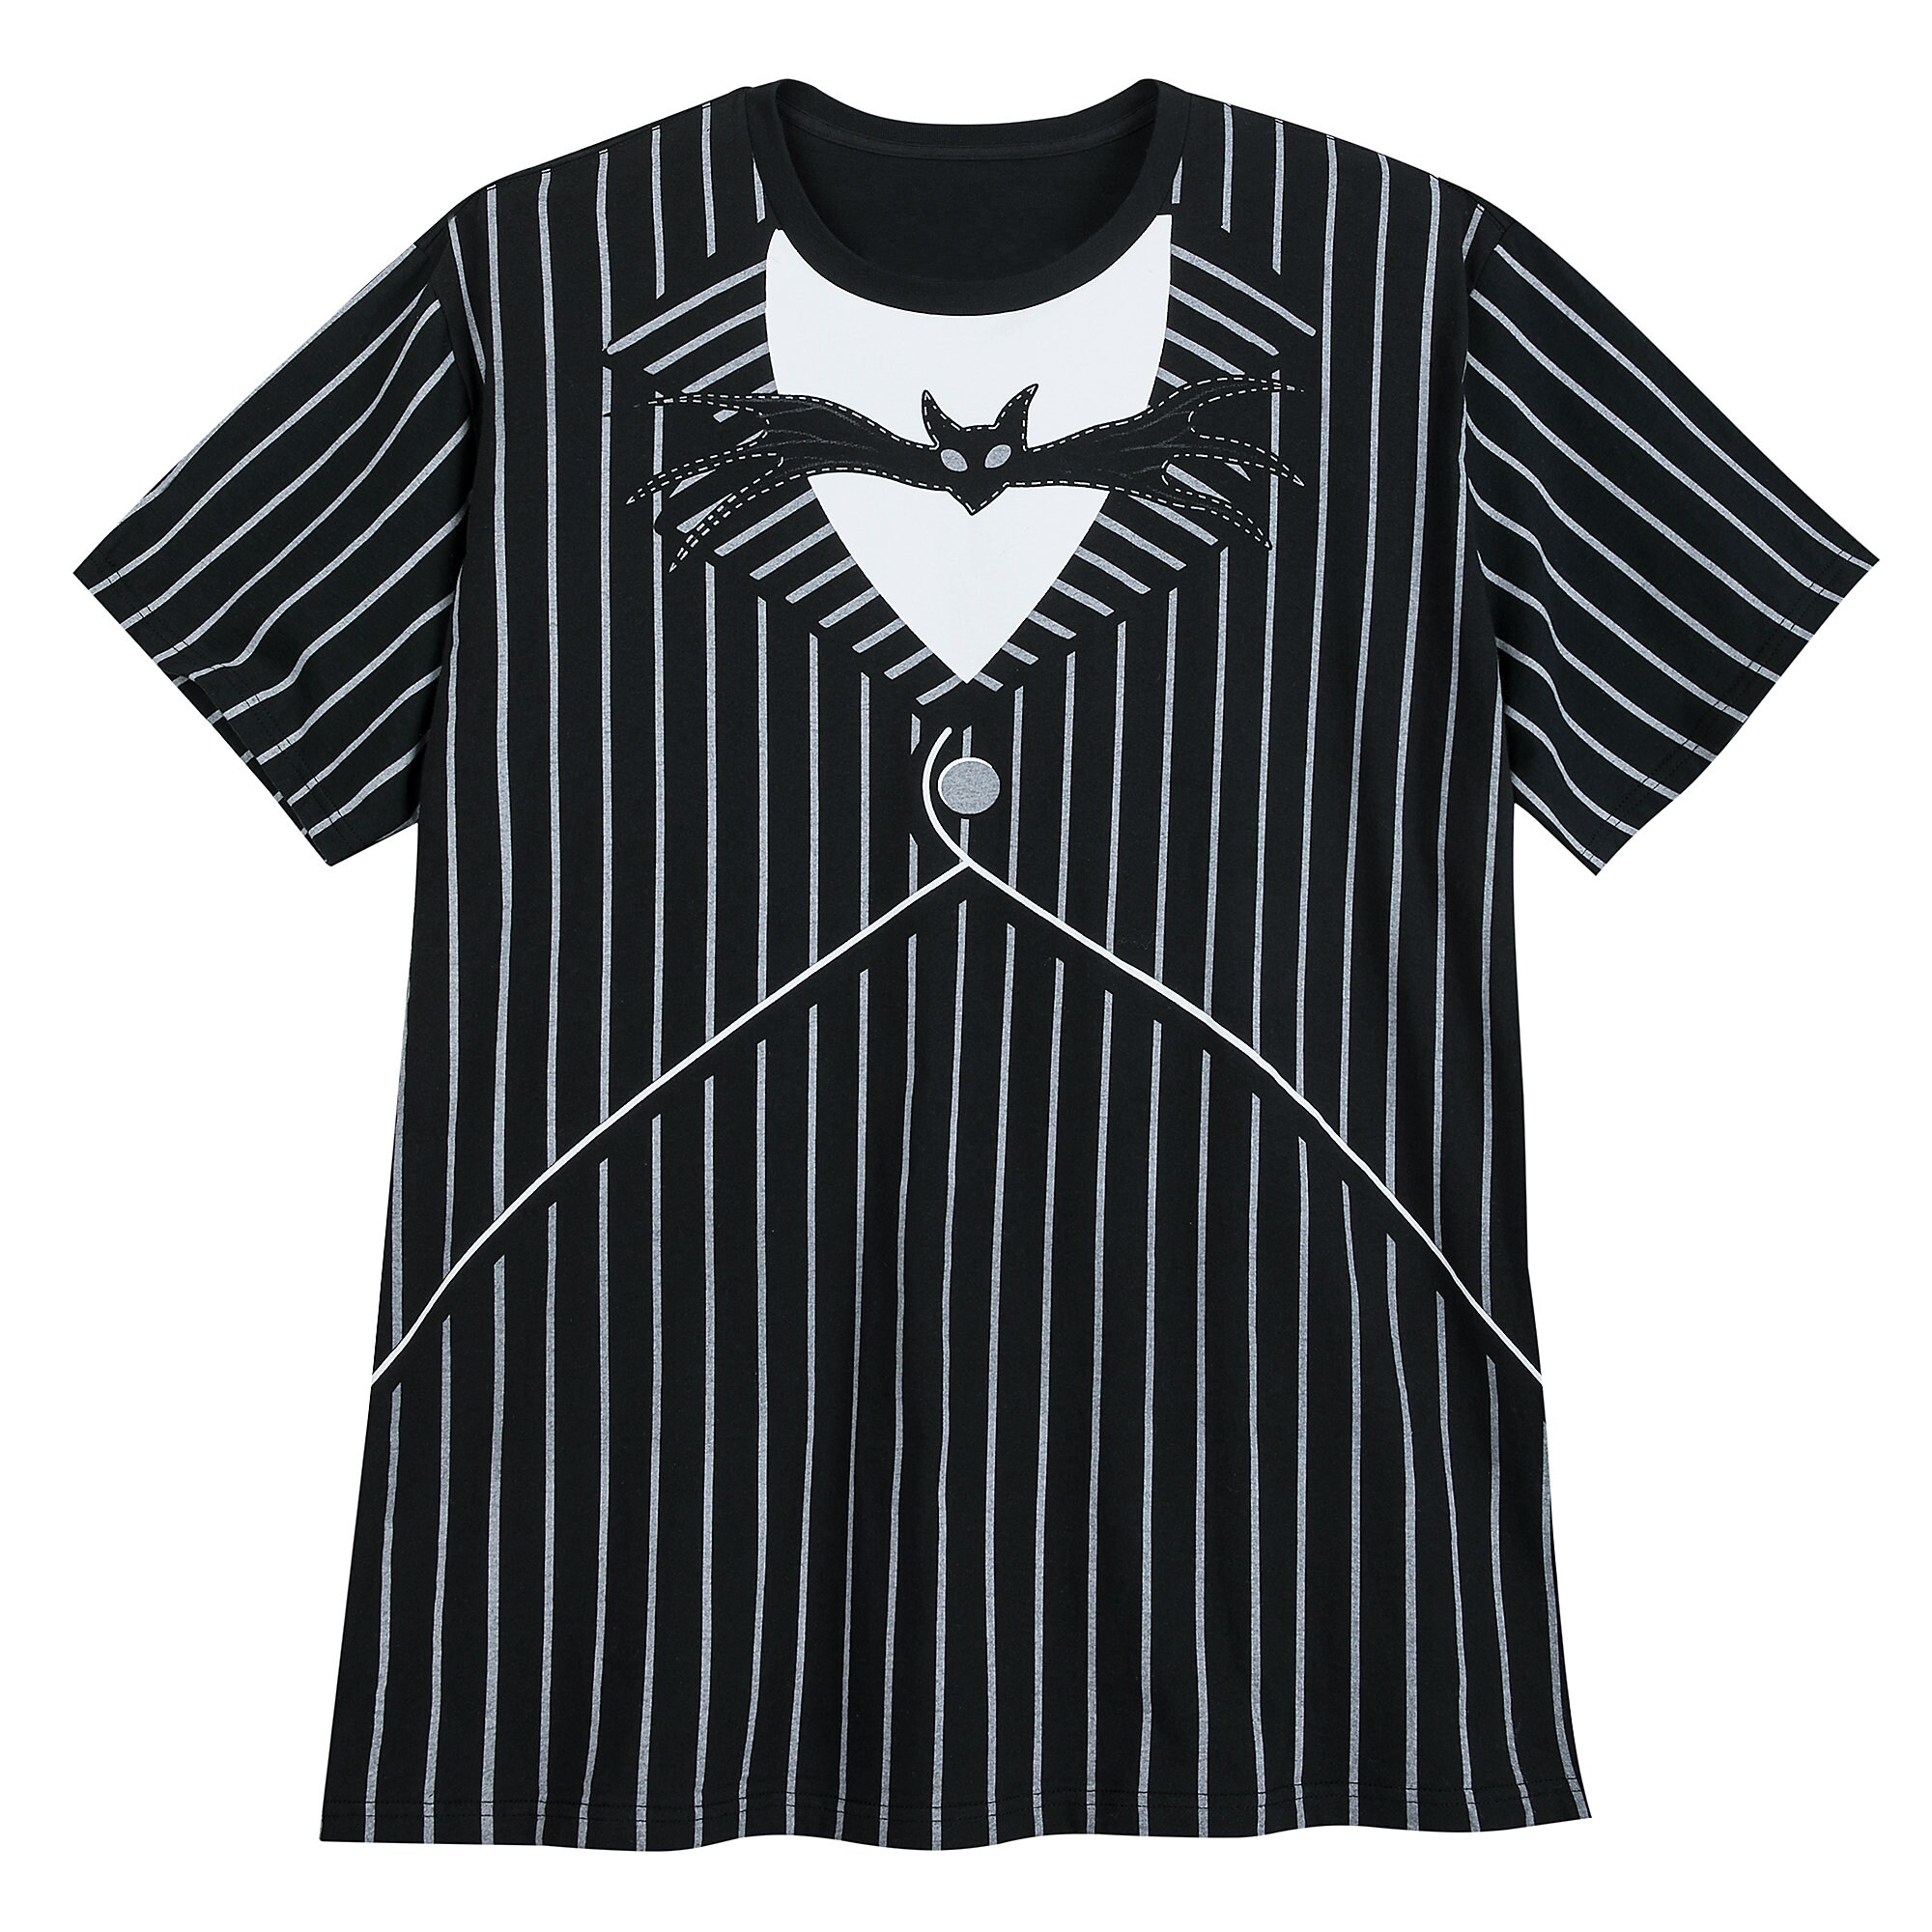 Jack Skellington Costume T-Shirt for Men - Extended Size